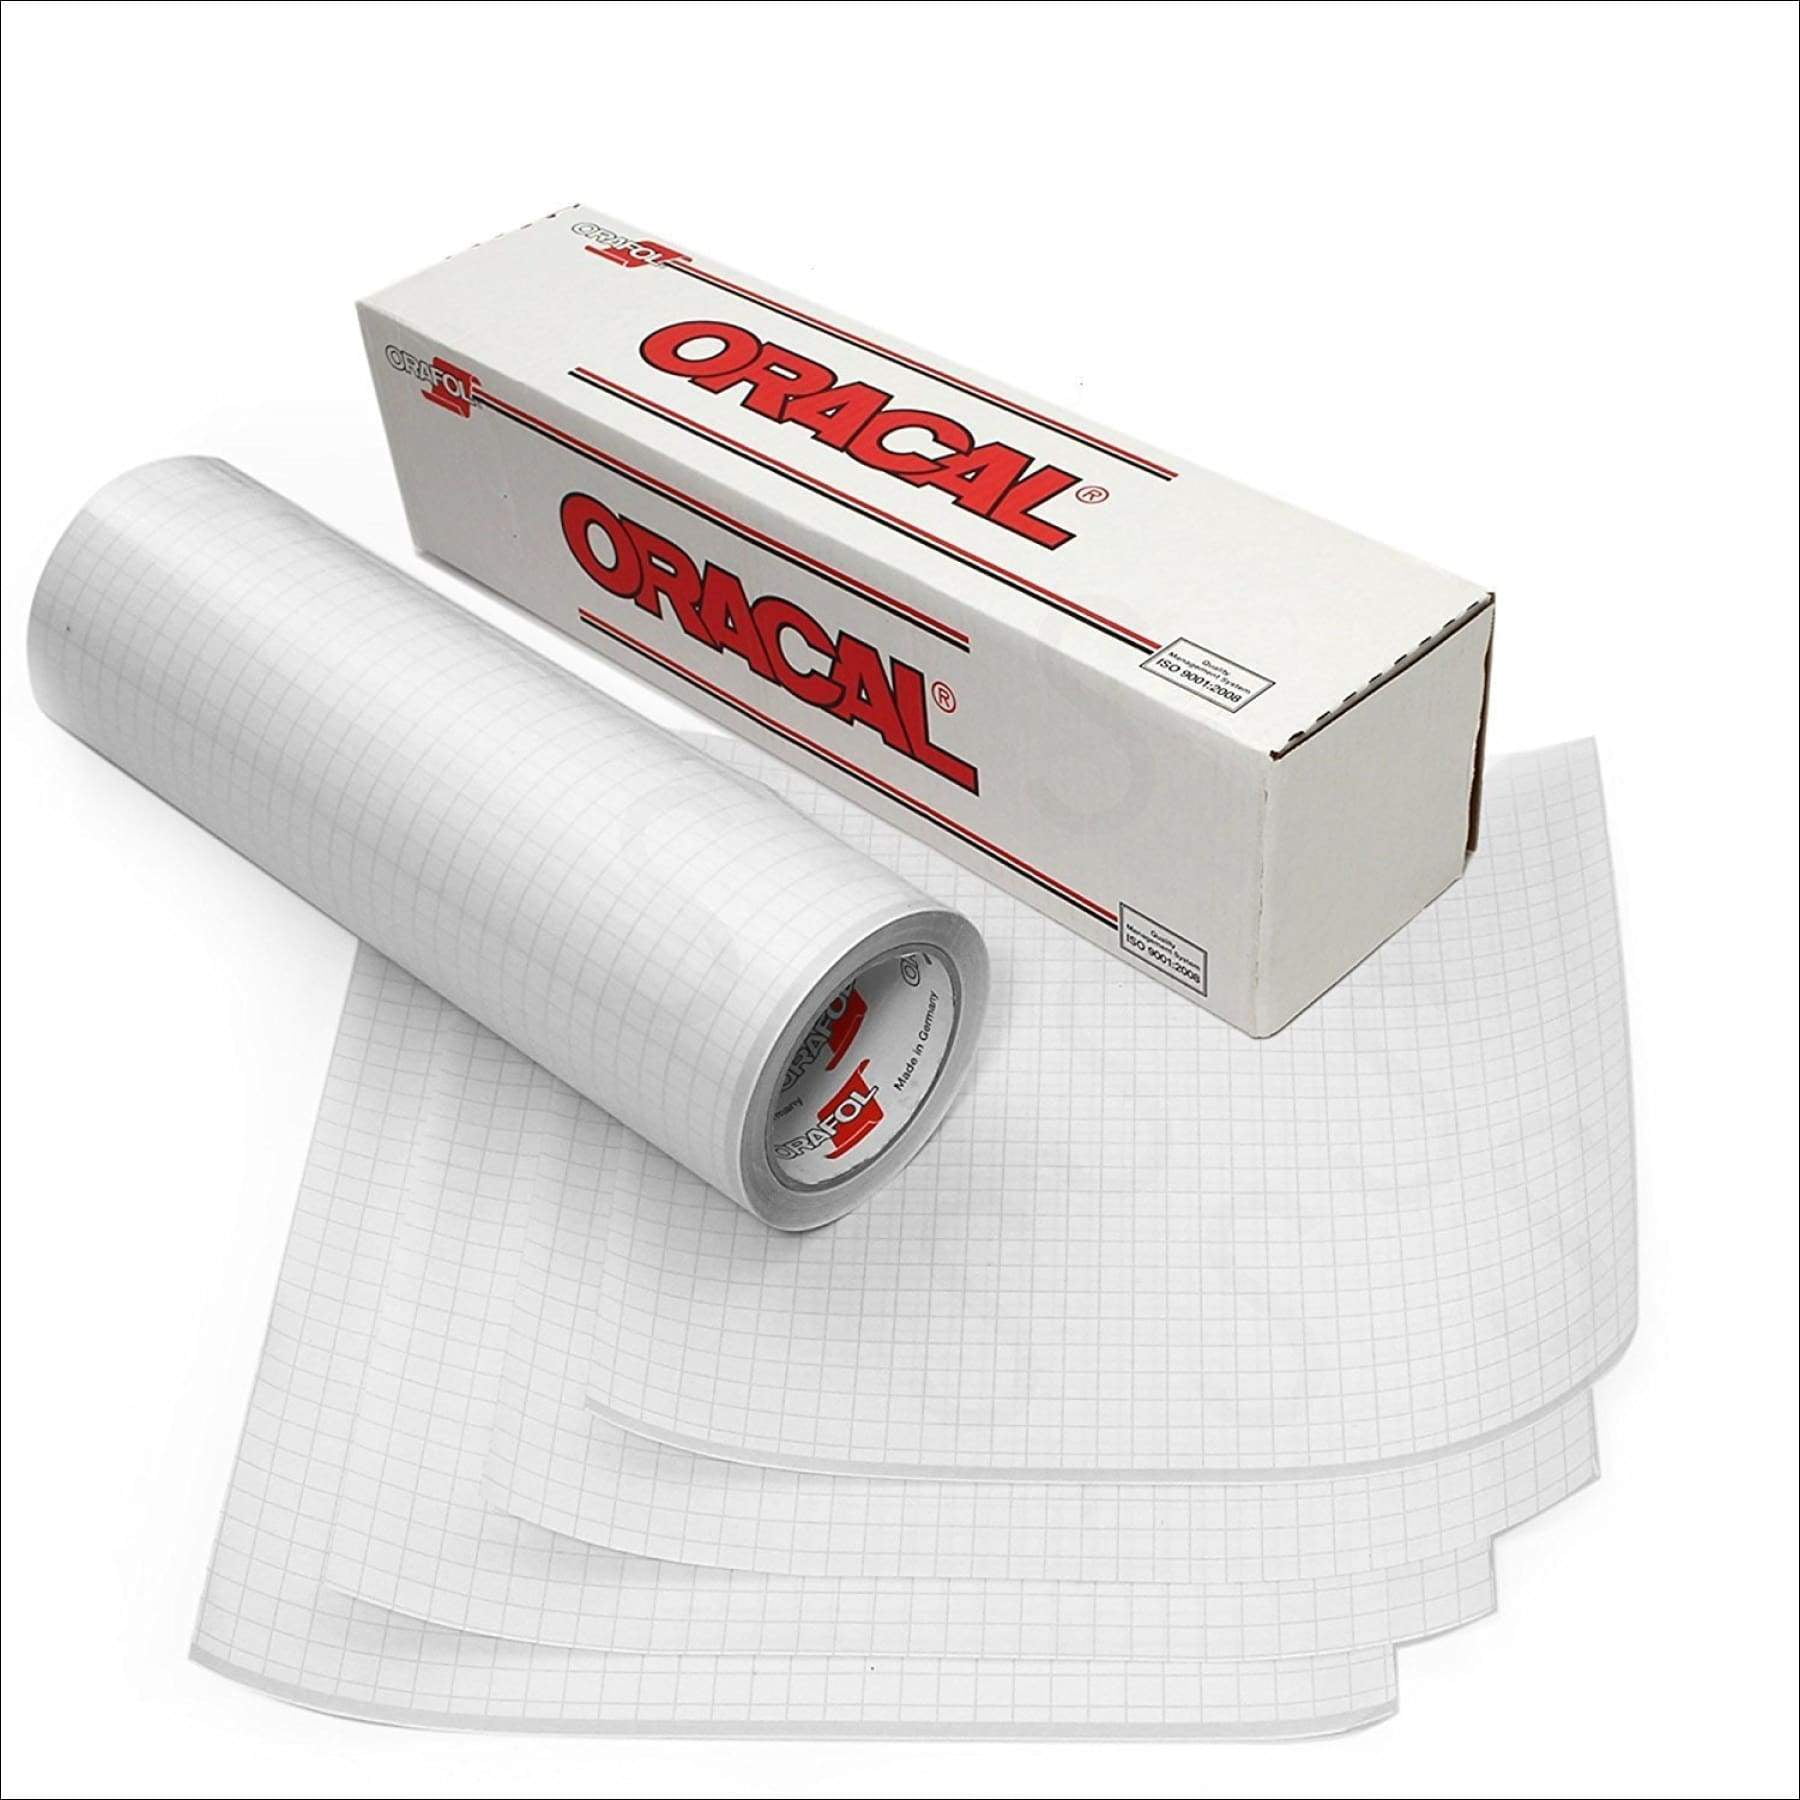 12”x12” Sheets Gloss Red Vinyl Cricut Oracal High Performance Cast 751 5 